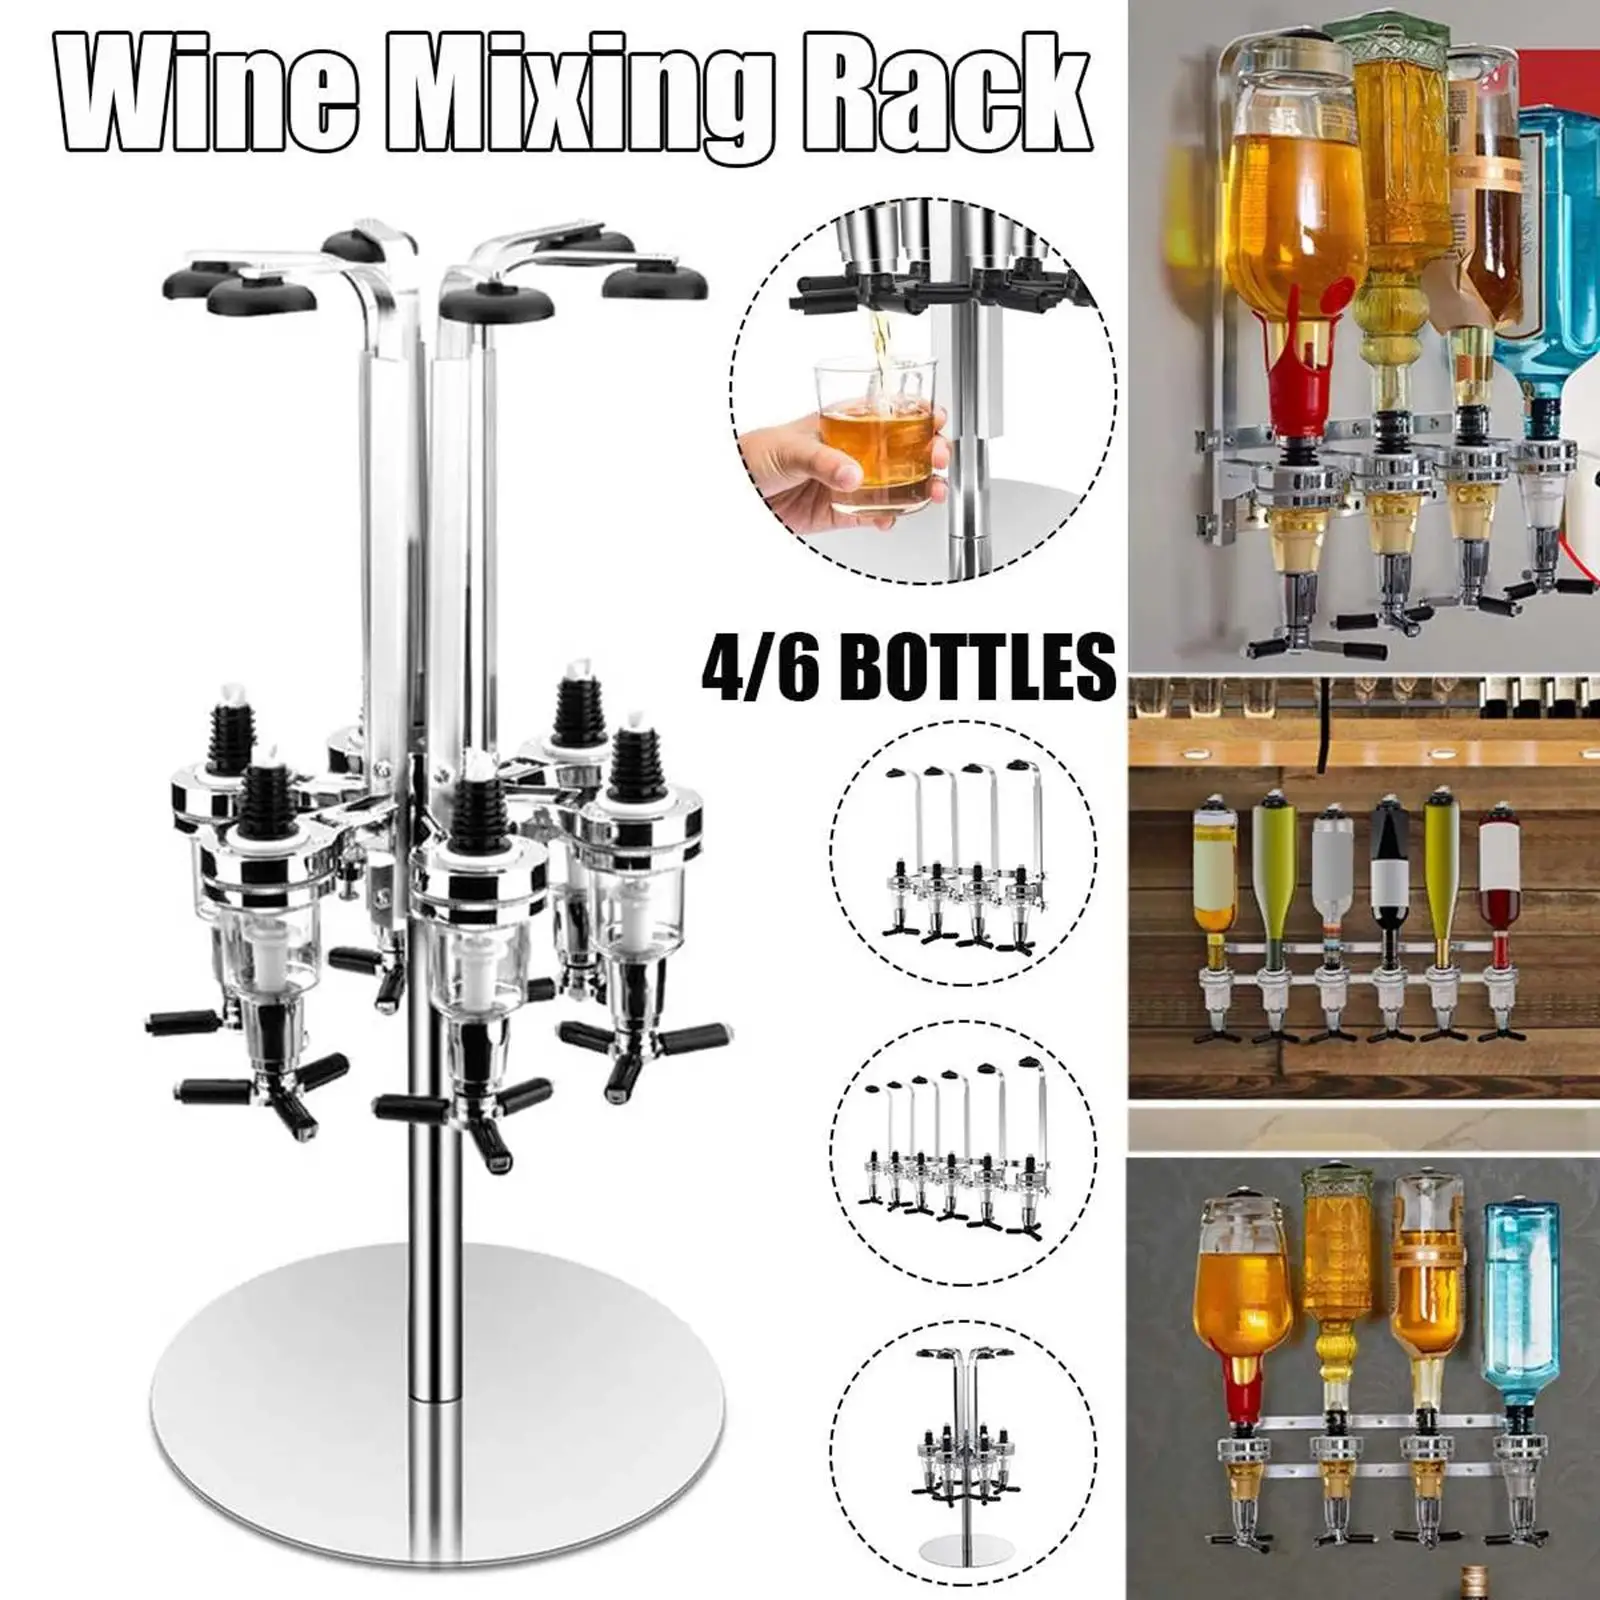 https://ae01.alicdn.com/kf/S85f8e426f33a44c787ac2c15cea24d66x/Rotating-6-Bottle-Liquor-Dispenser-Wine-Rack-Jet-Bar-Set-Drinks-Dispenser.jpg